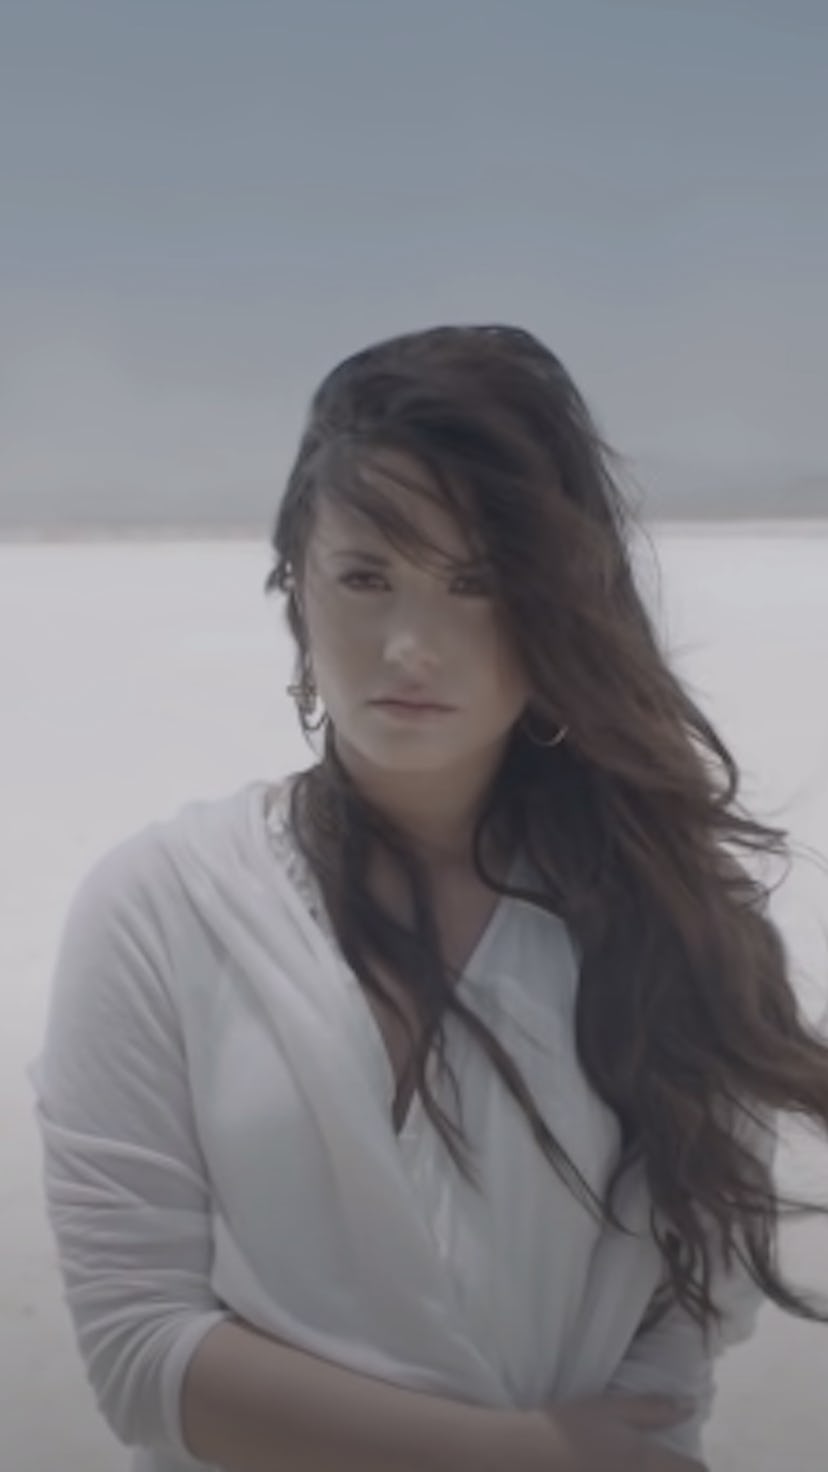 Demi Lovato's music video evolution from rock royalty to honest storyteller.